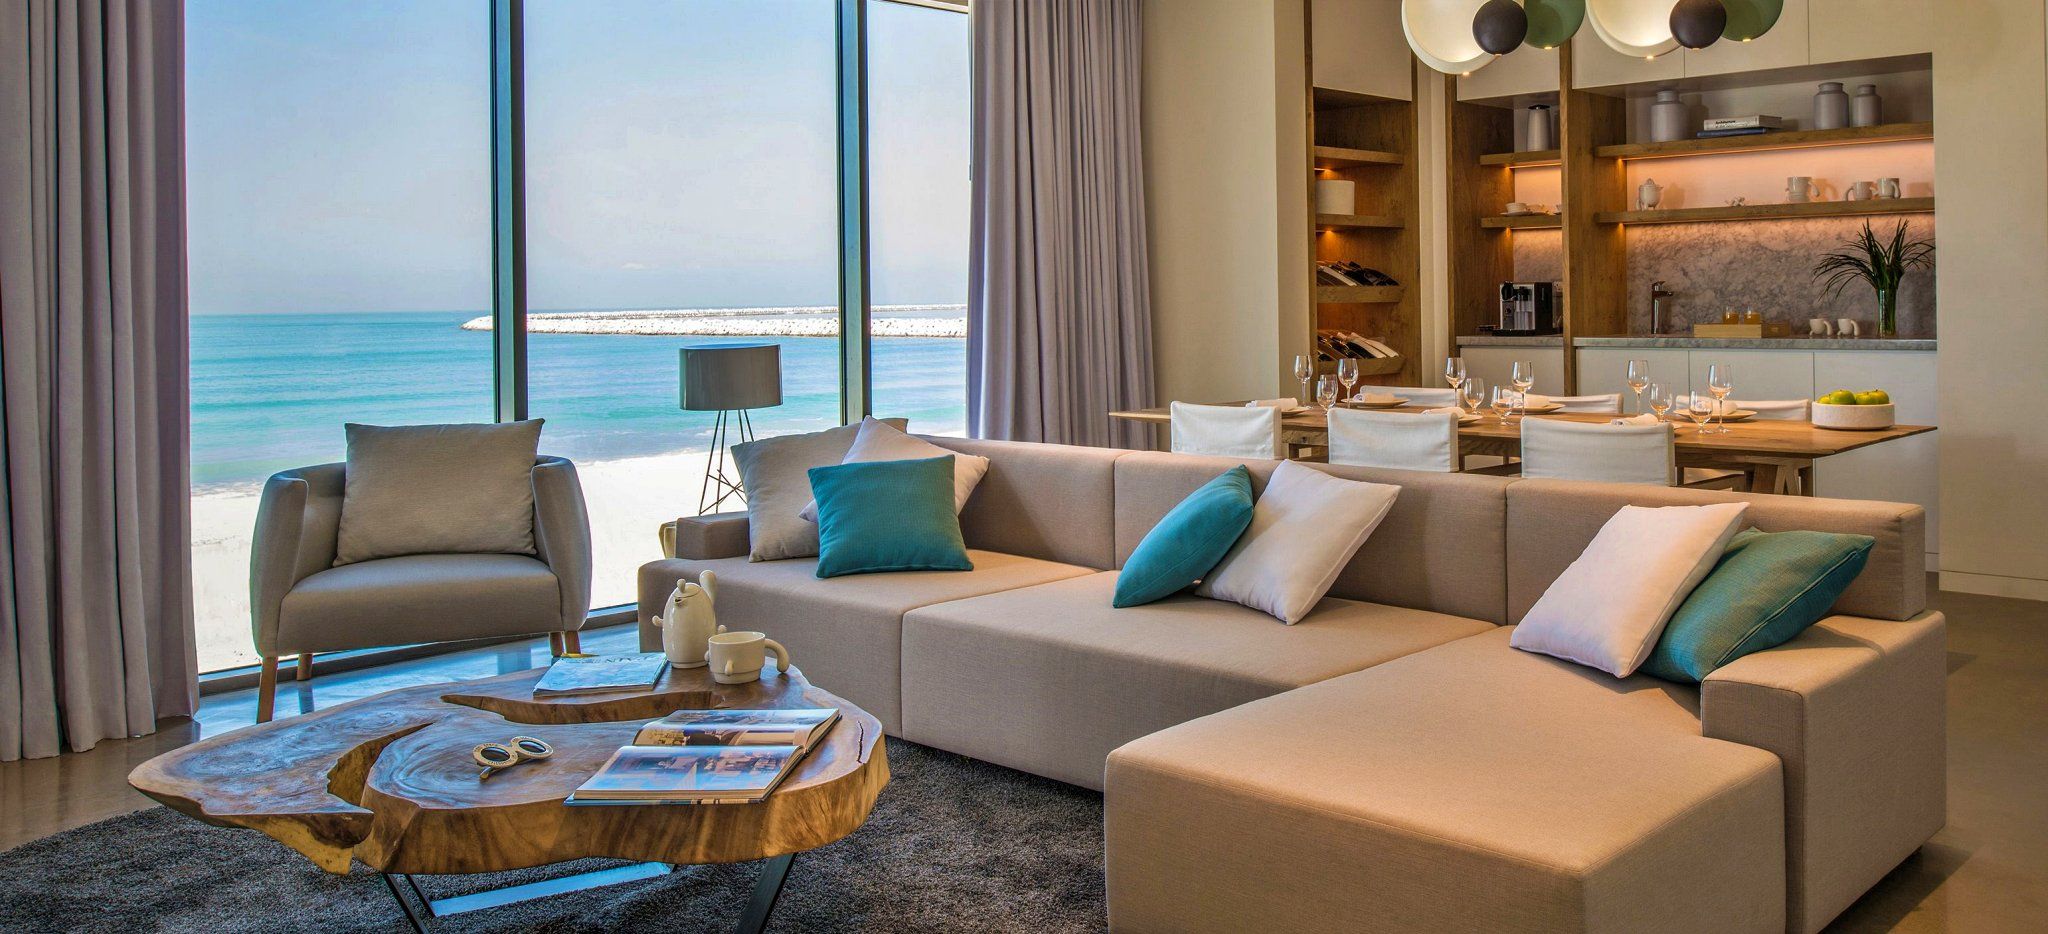 Ein Wohnzimmer mit einer großen Couch und Blick auf das Meer Dubais